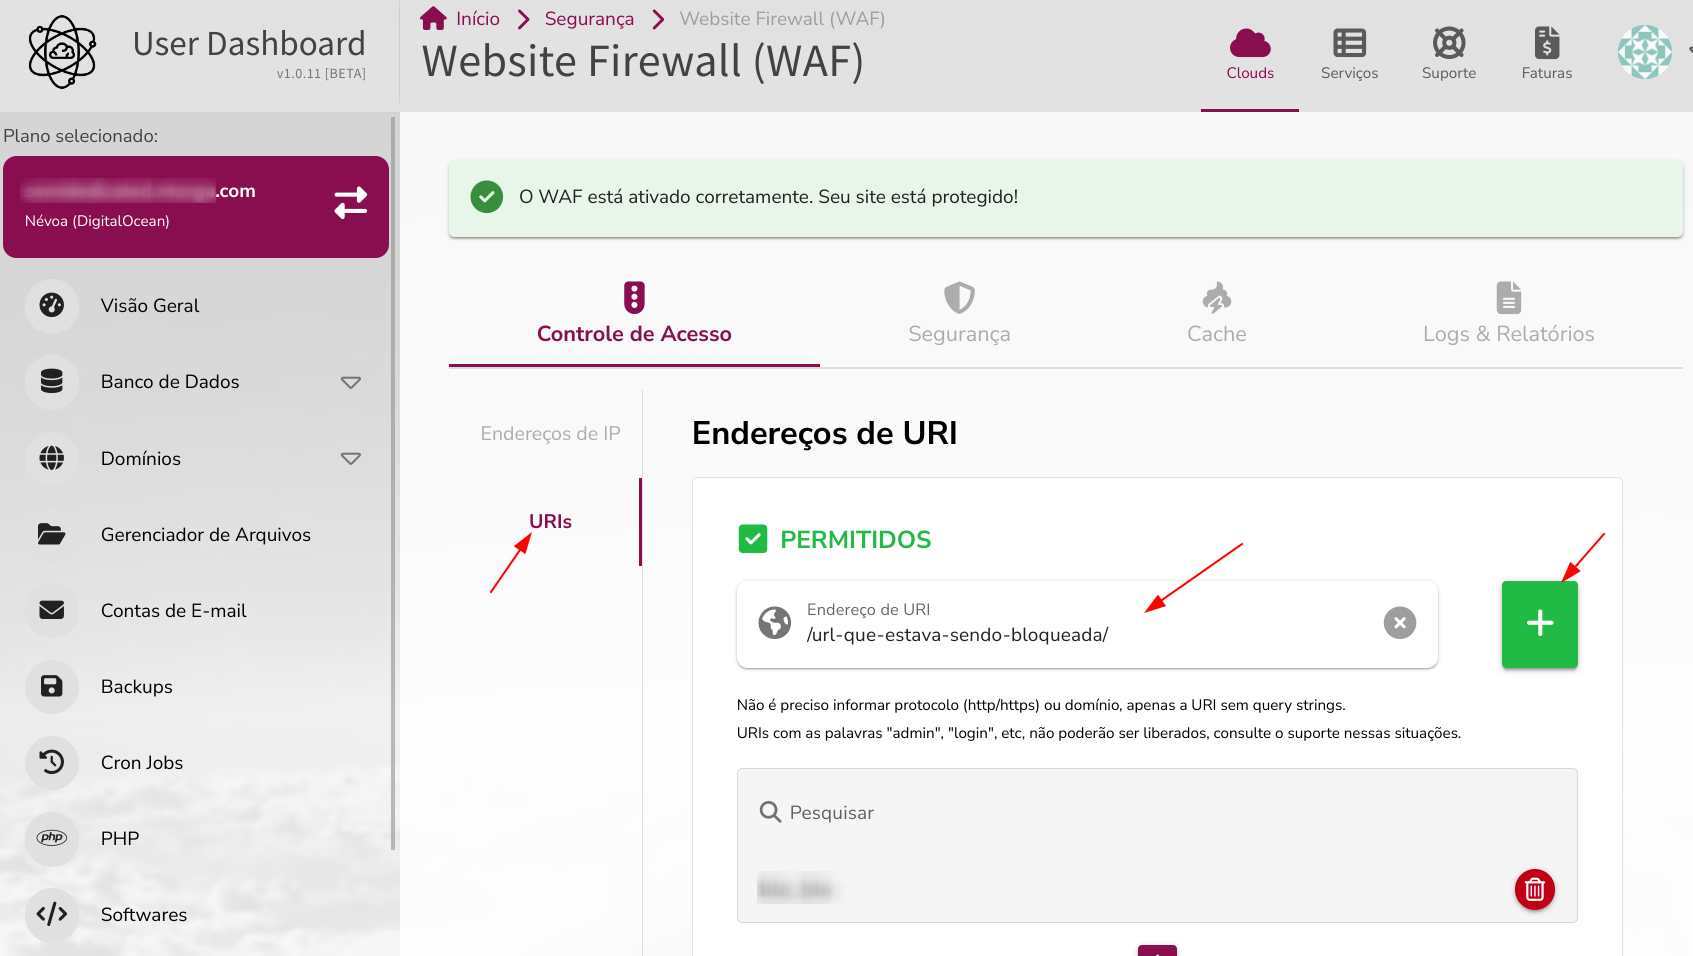 Liberar URL no WAF